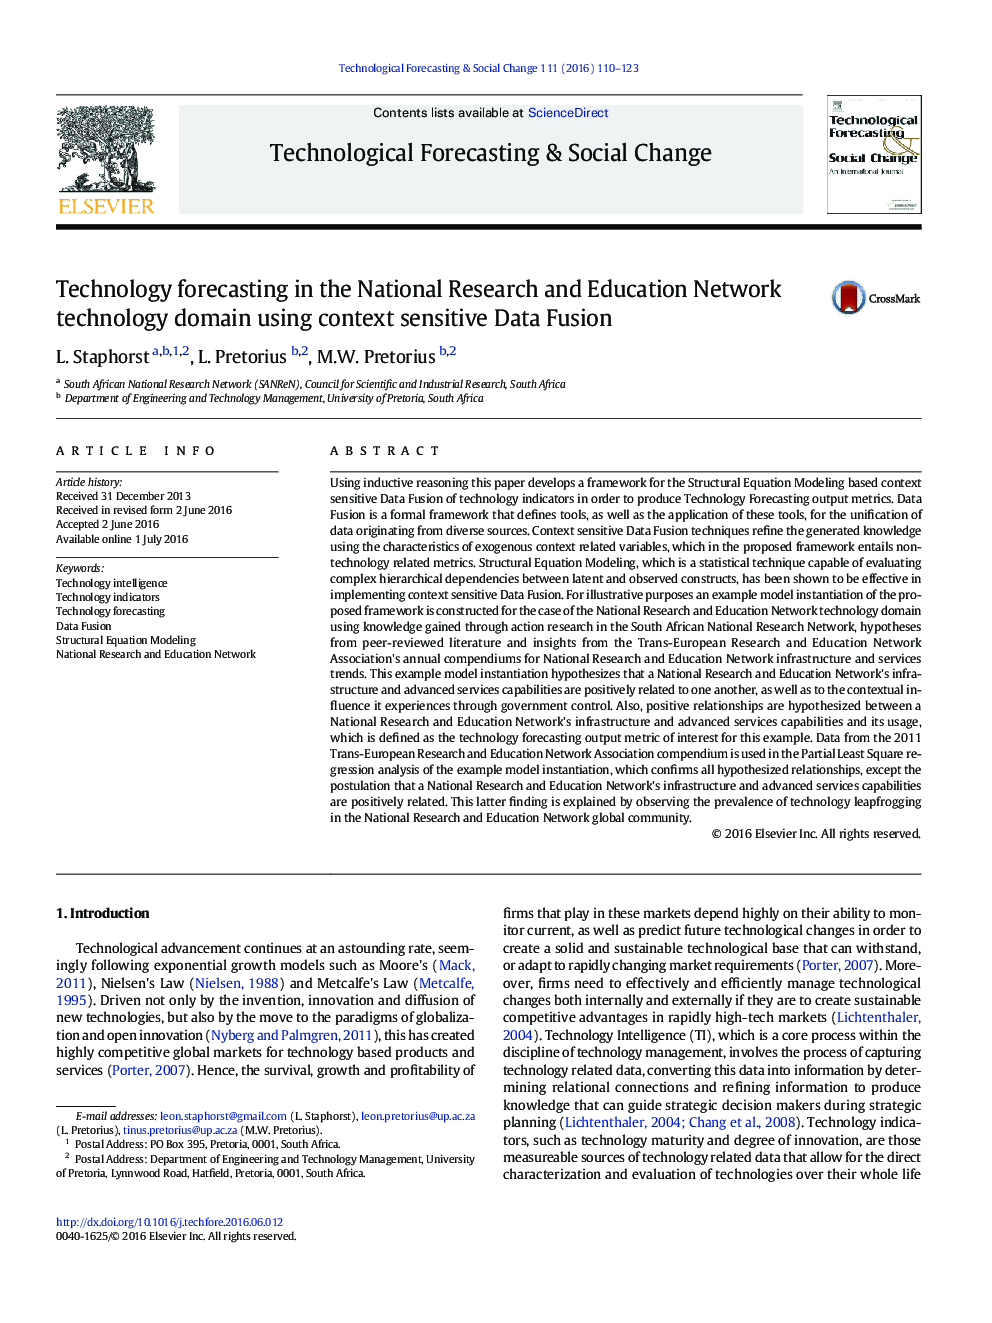 پیش بینی فناوری در حوزه فناوری شبکه ملی پژوهش و آموزش و پرورش با استفاده از داده های فیوژن متناهی 